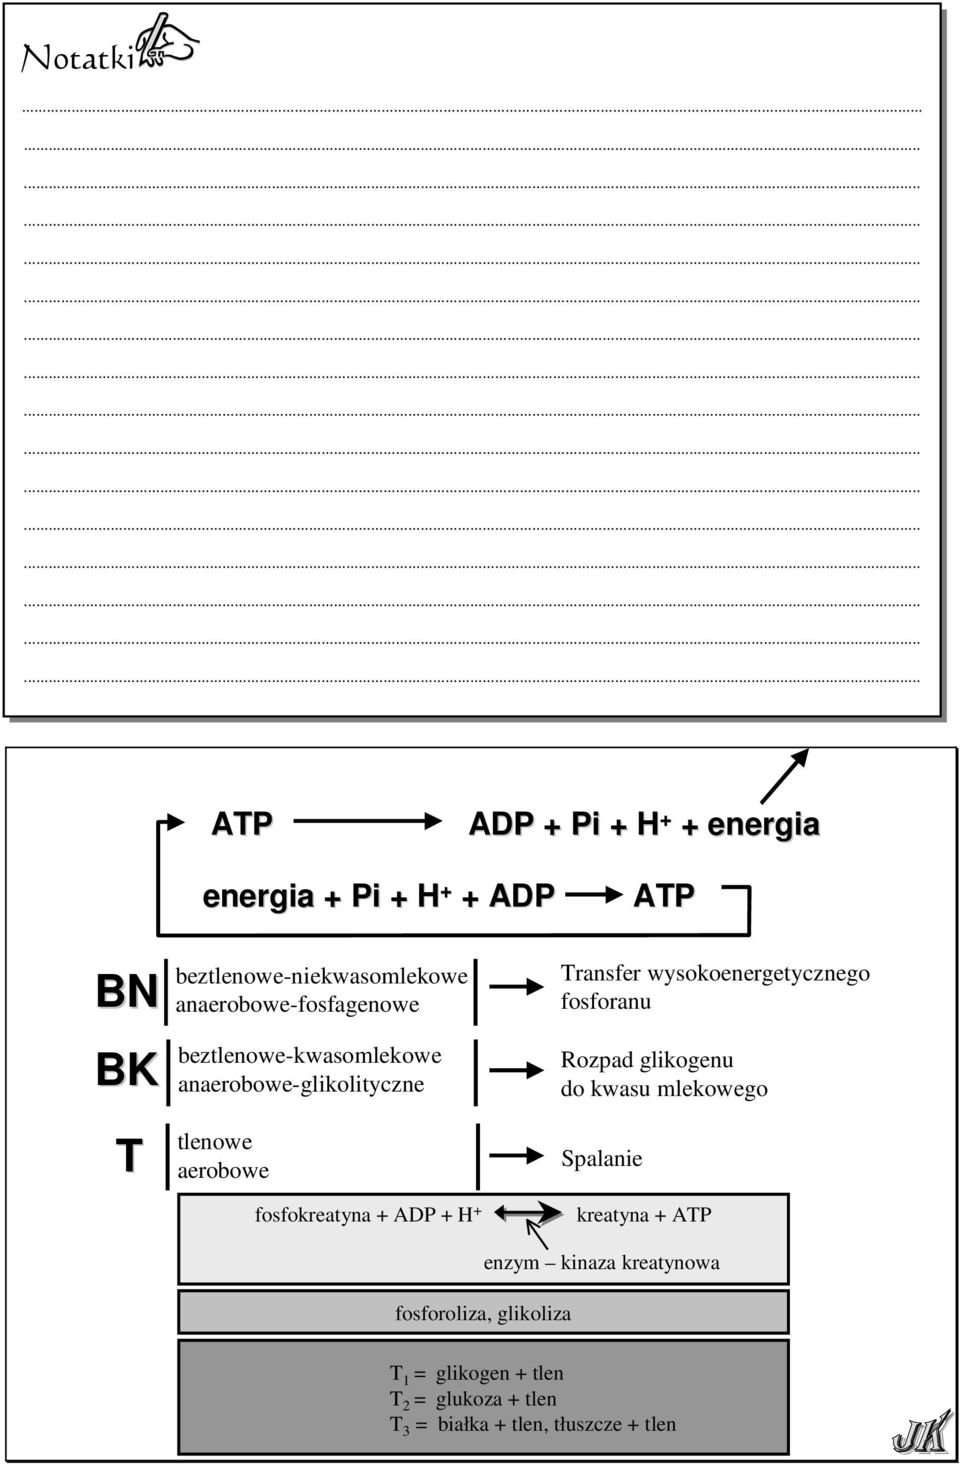 anaerobowe-fosfagenowe beztlenowe-kwasomlekowe anaerobowe-glikolityczne Transfer wysokoenergetycznego